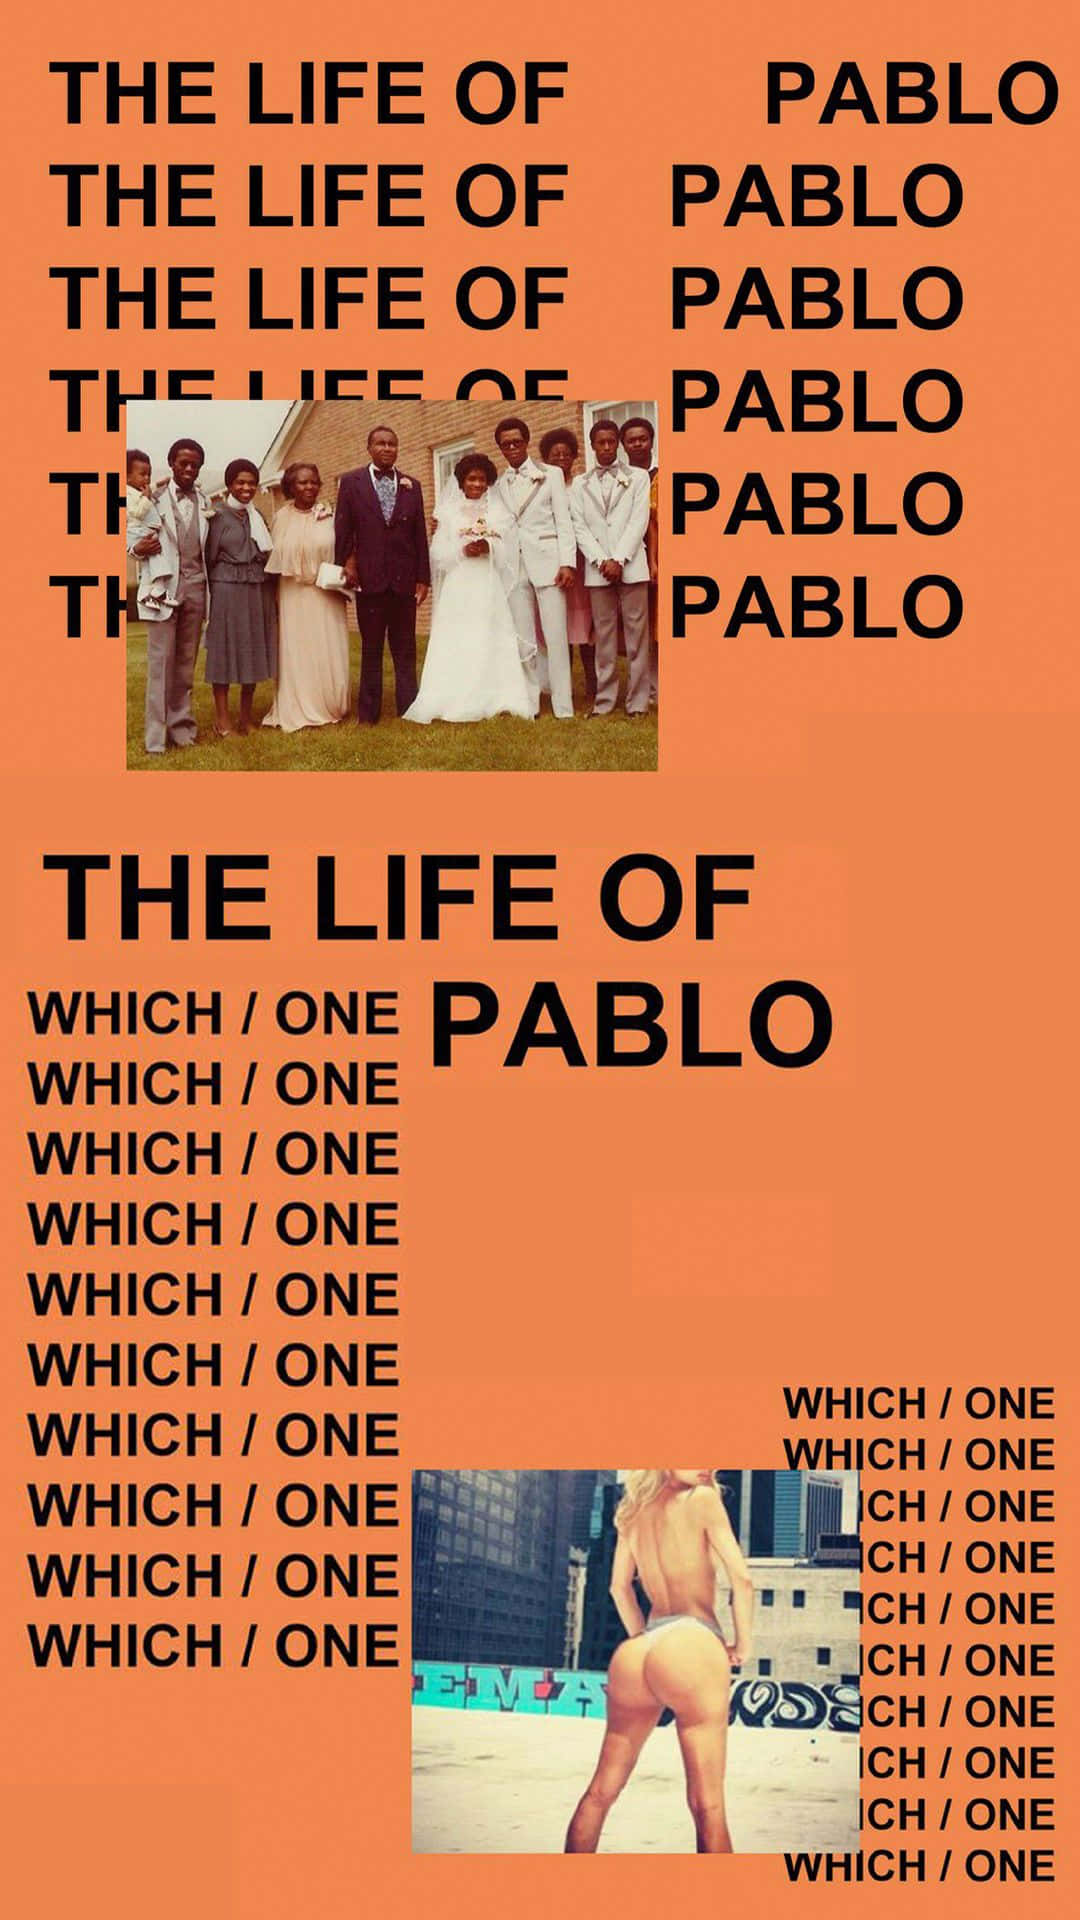 Erlebedas Leben Von Pablo Von Kanye West Wallpaper